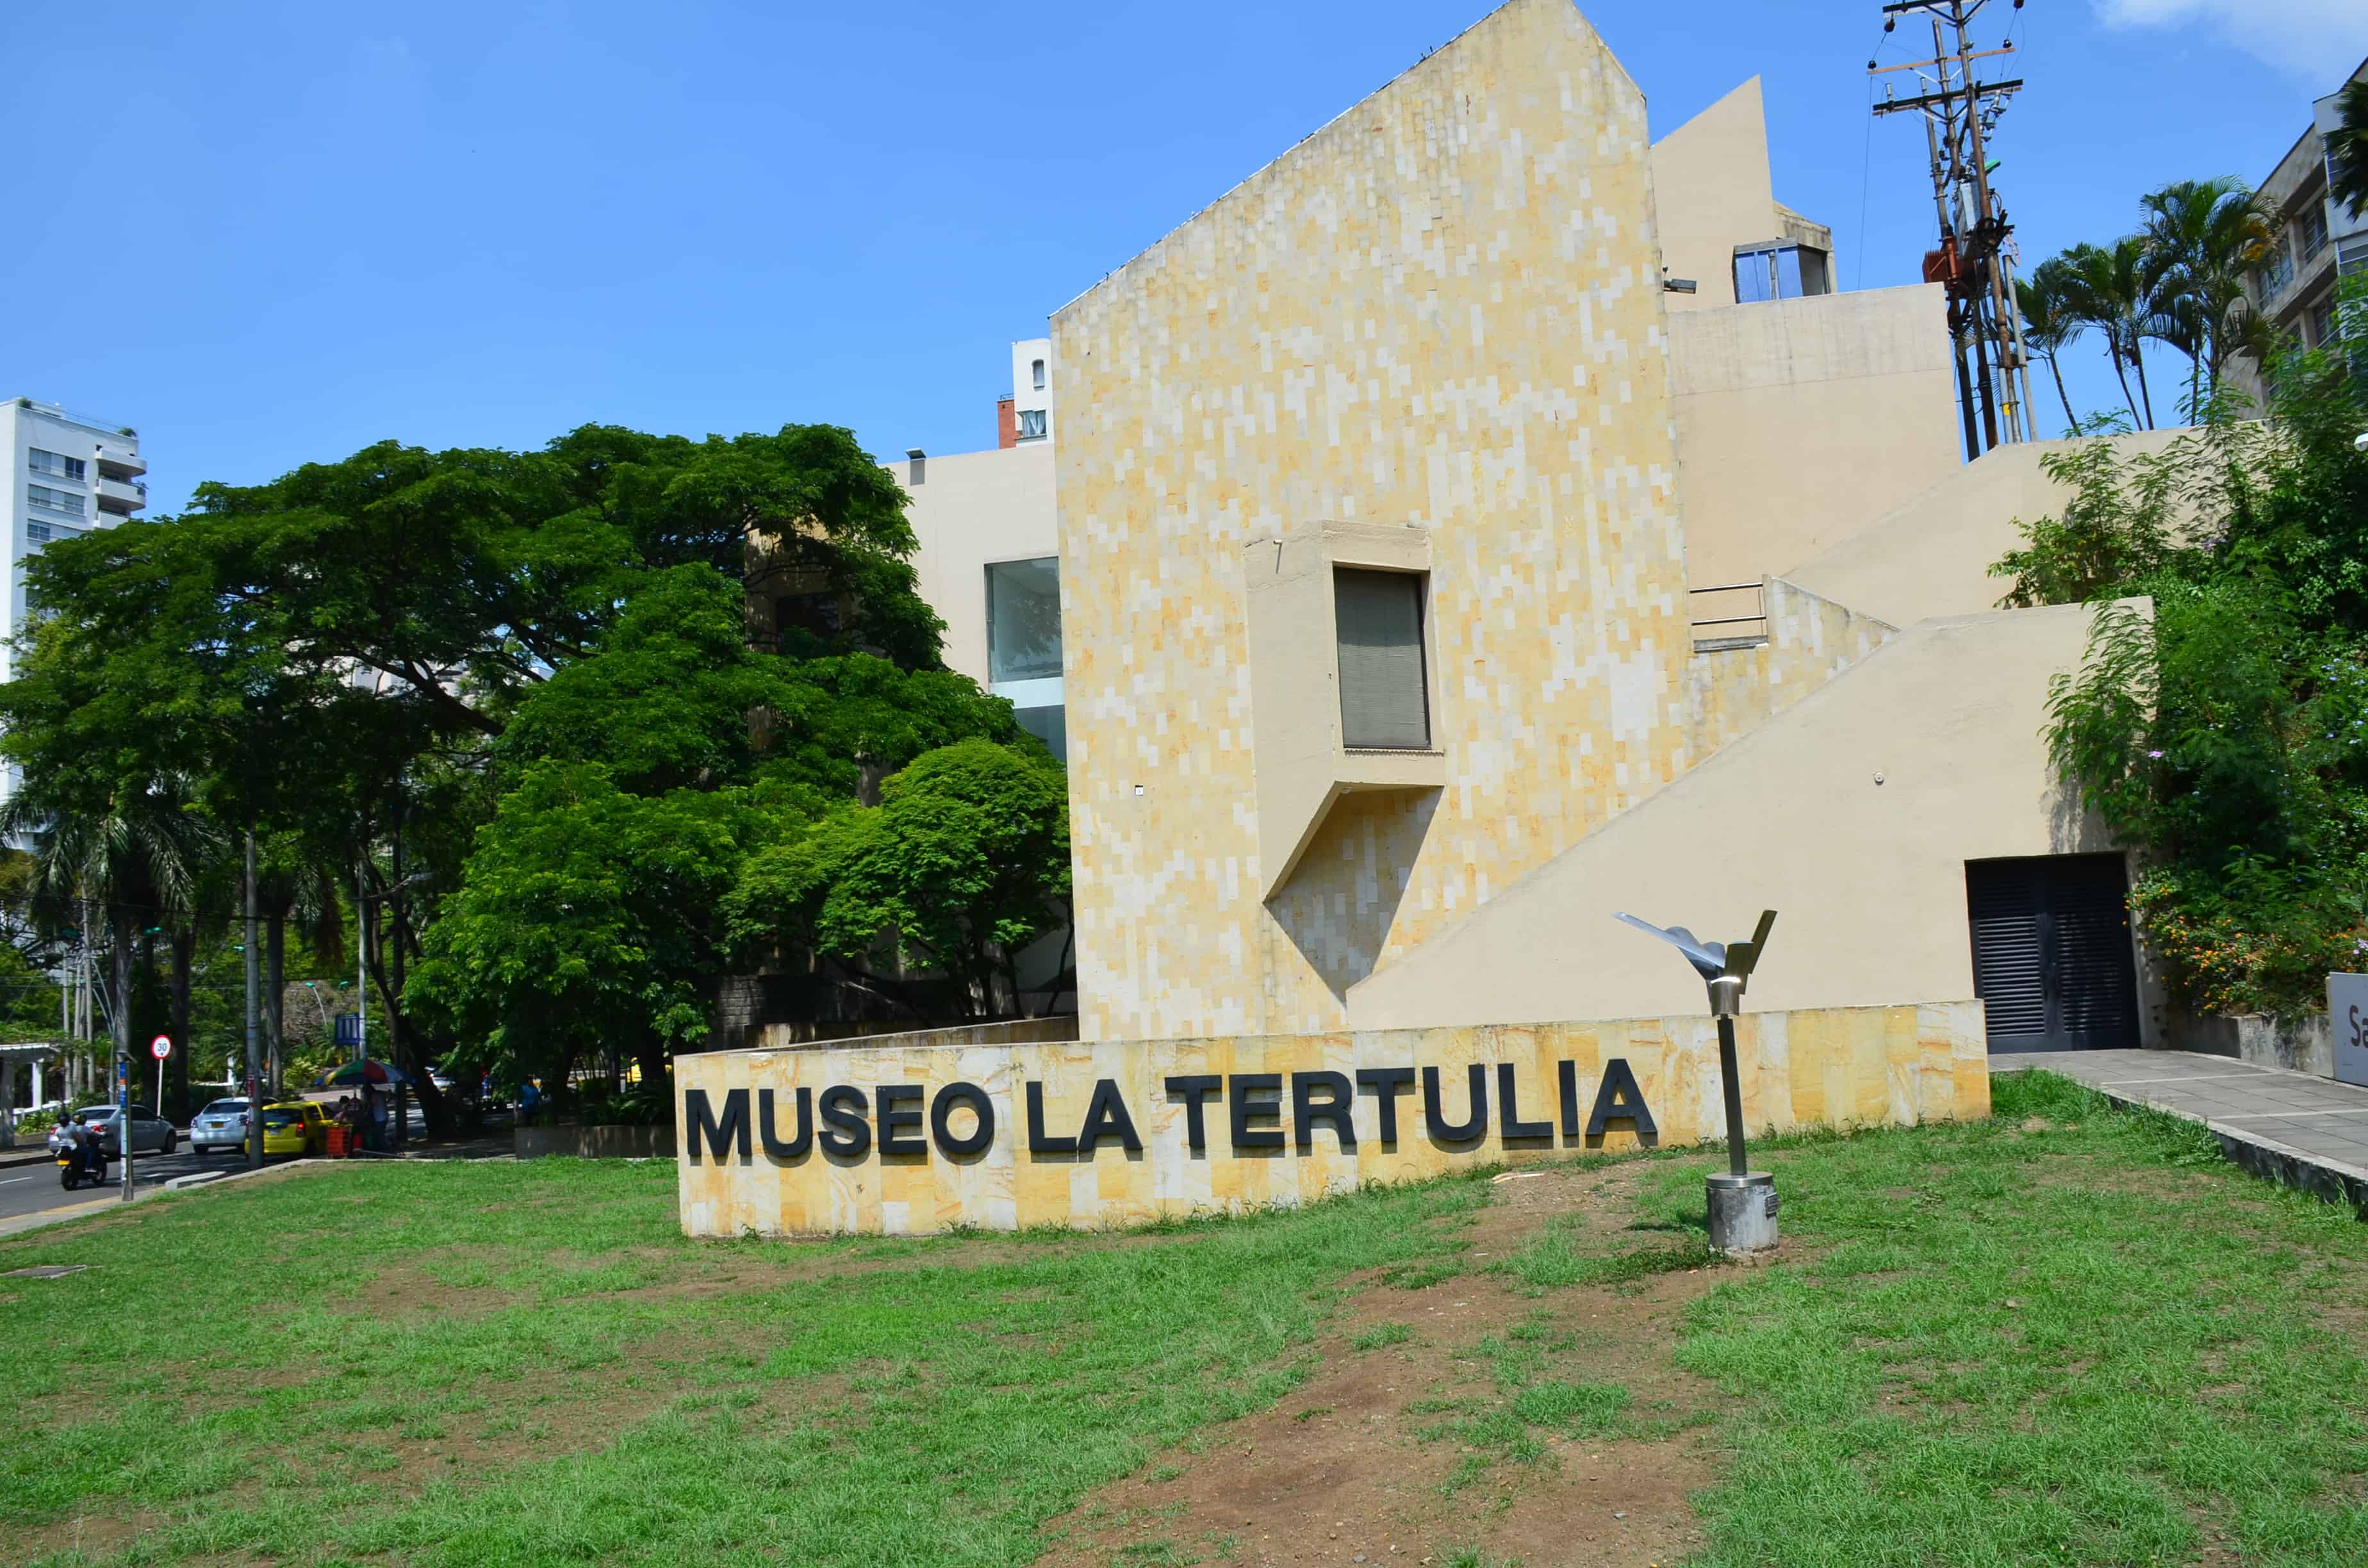 La Tertulia Museum in Cali, Colombia